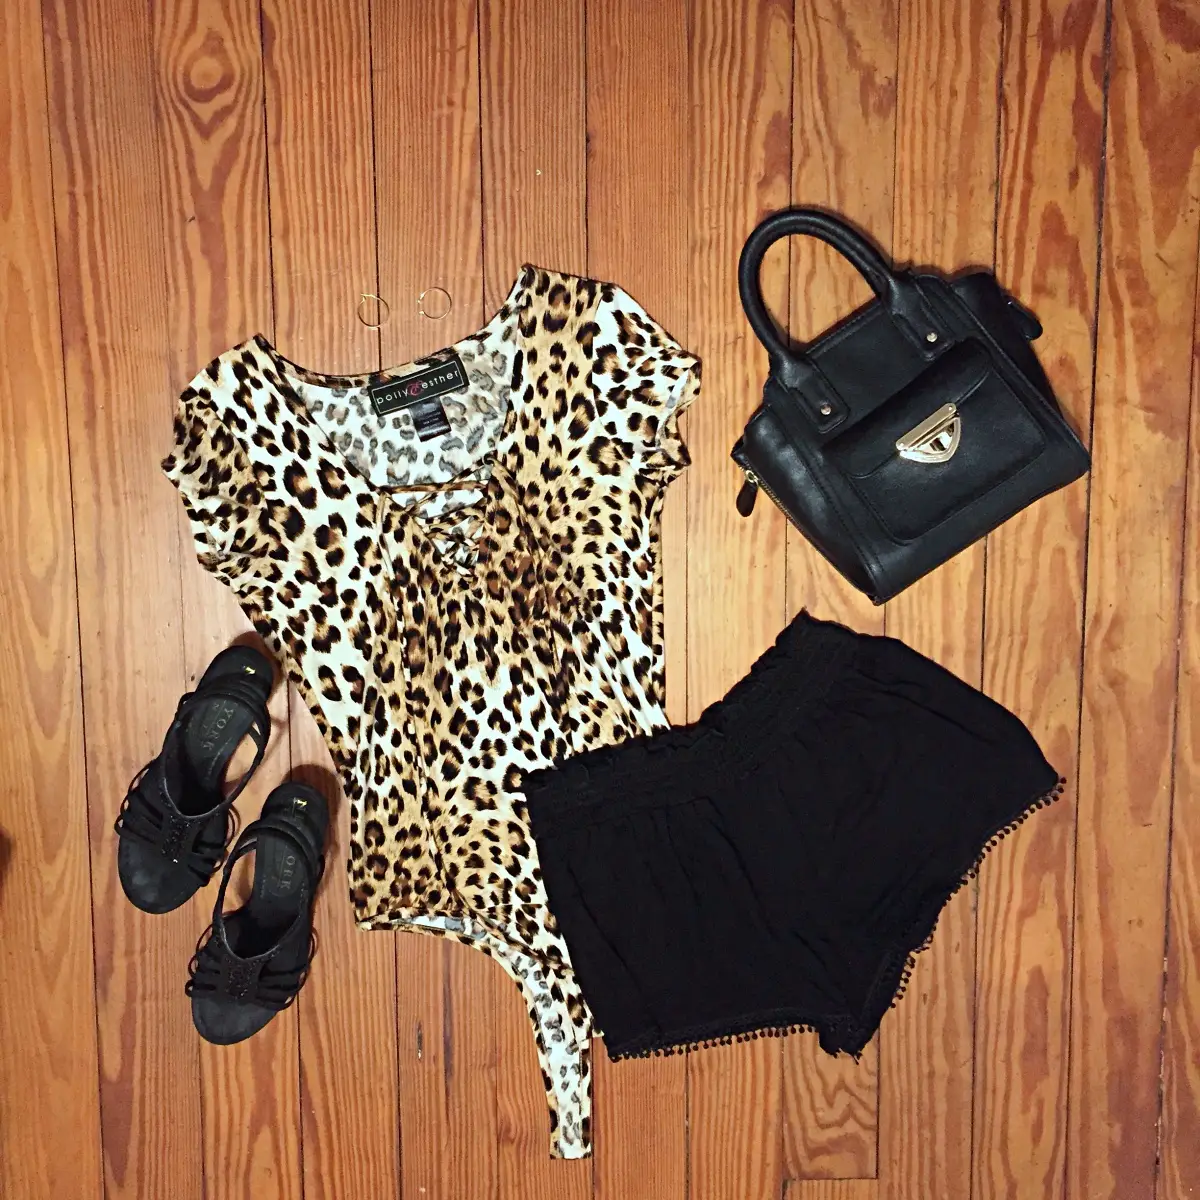 leopard bodysuit outfit